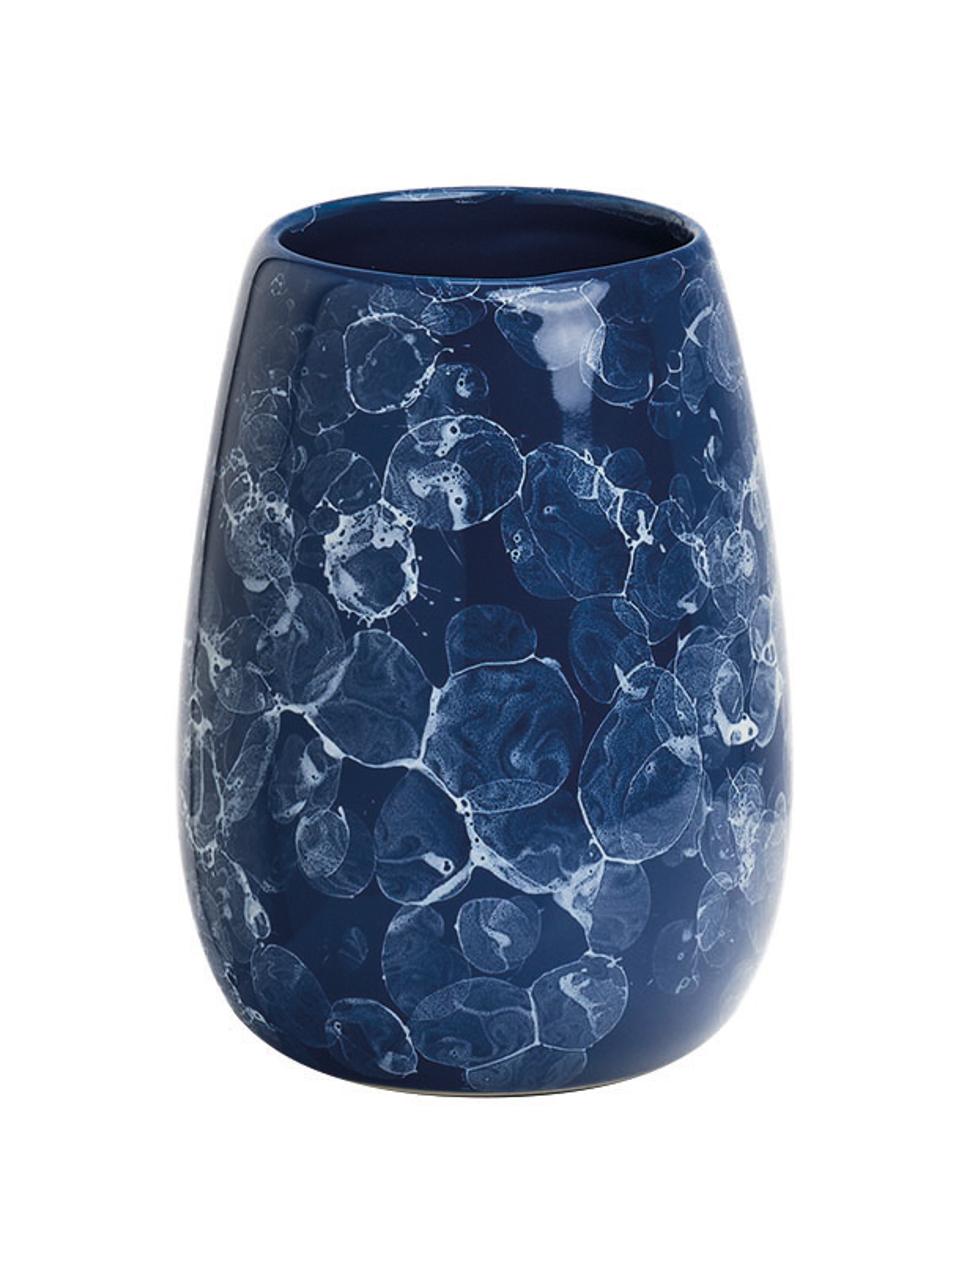 Zahnputzbecher Blue Marble aus Keramik, Keramik, Blau, Ø 9 x H 12 cm